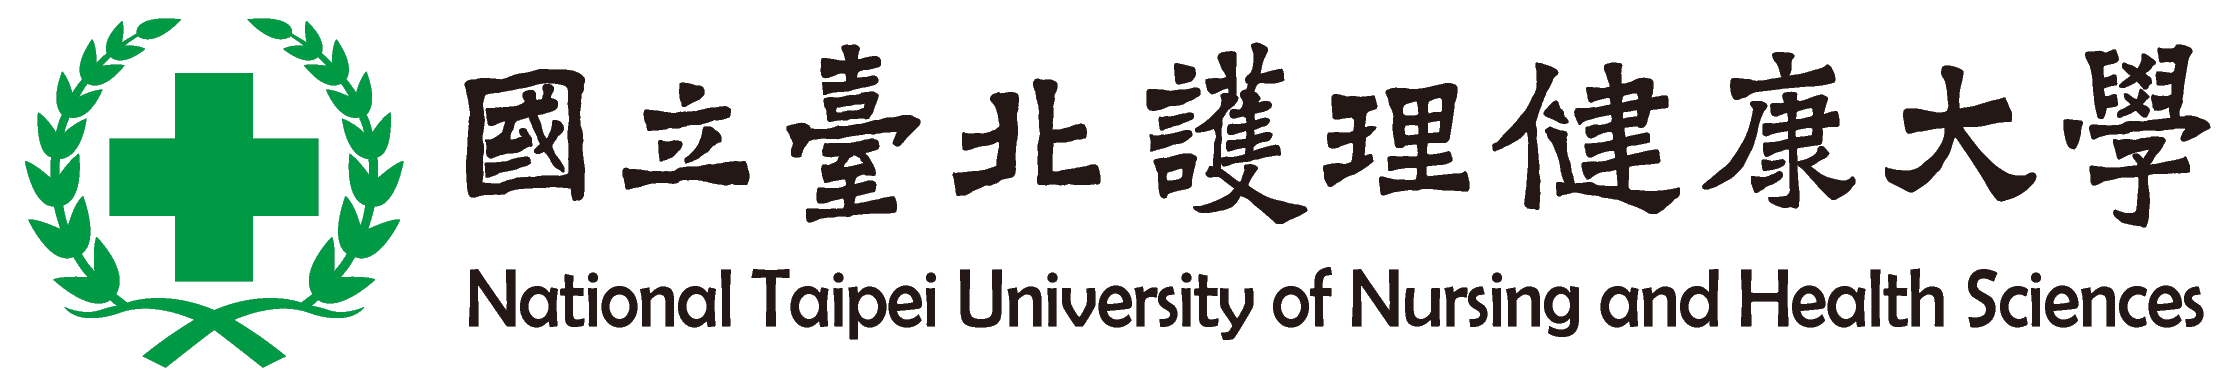 National Taipei University of Nursing and Health